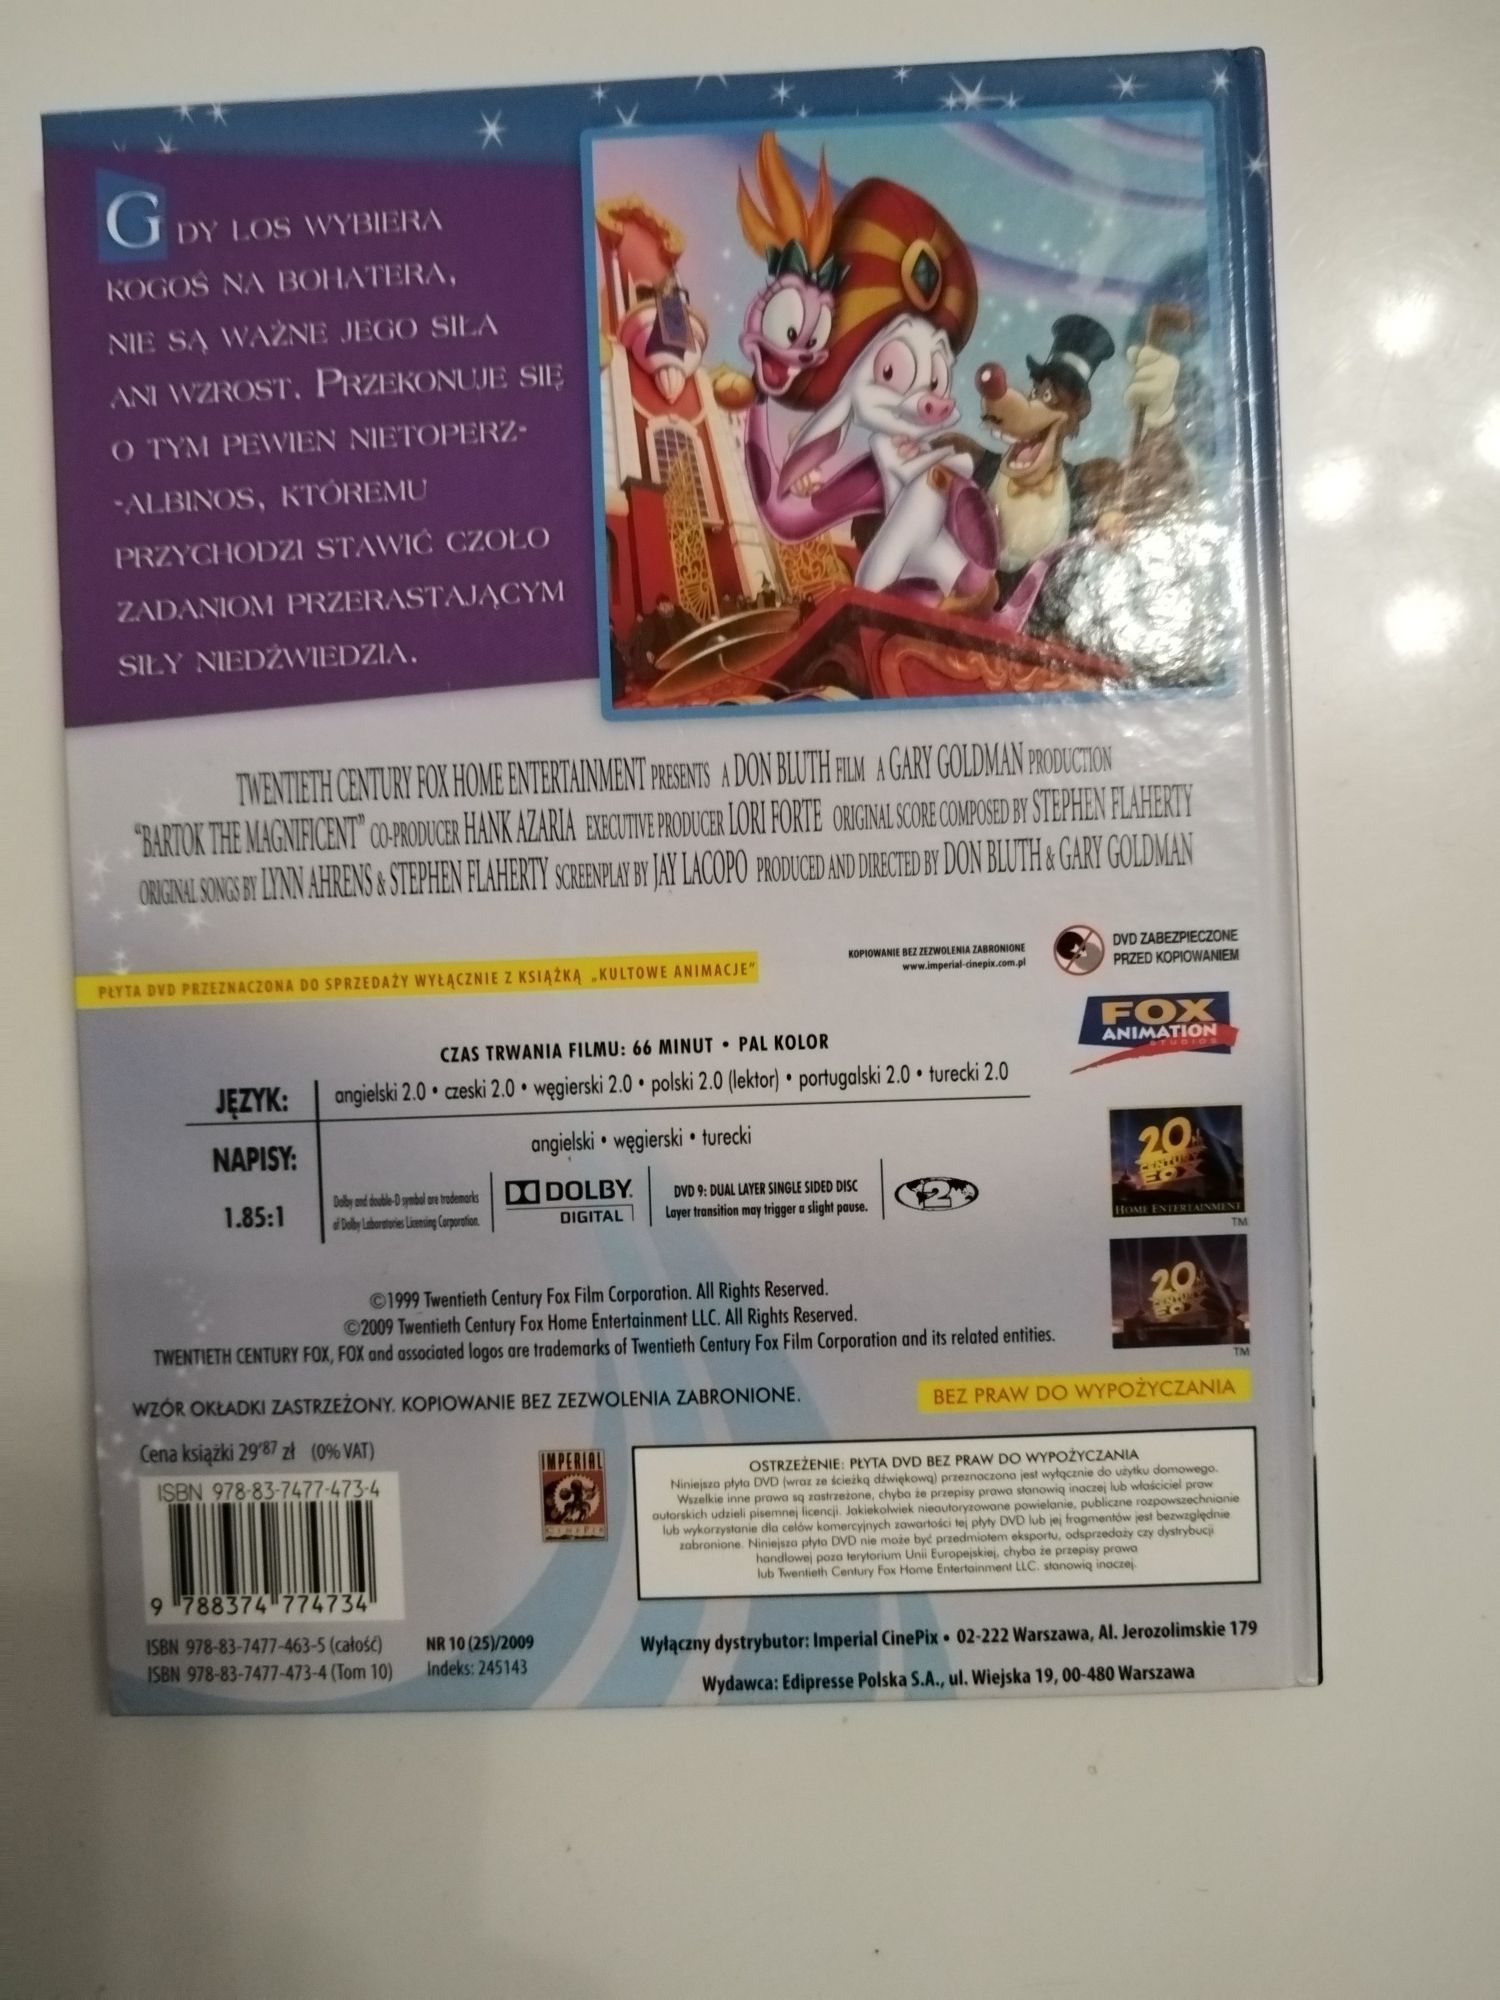 Film na DVD Barok